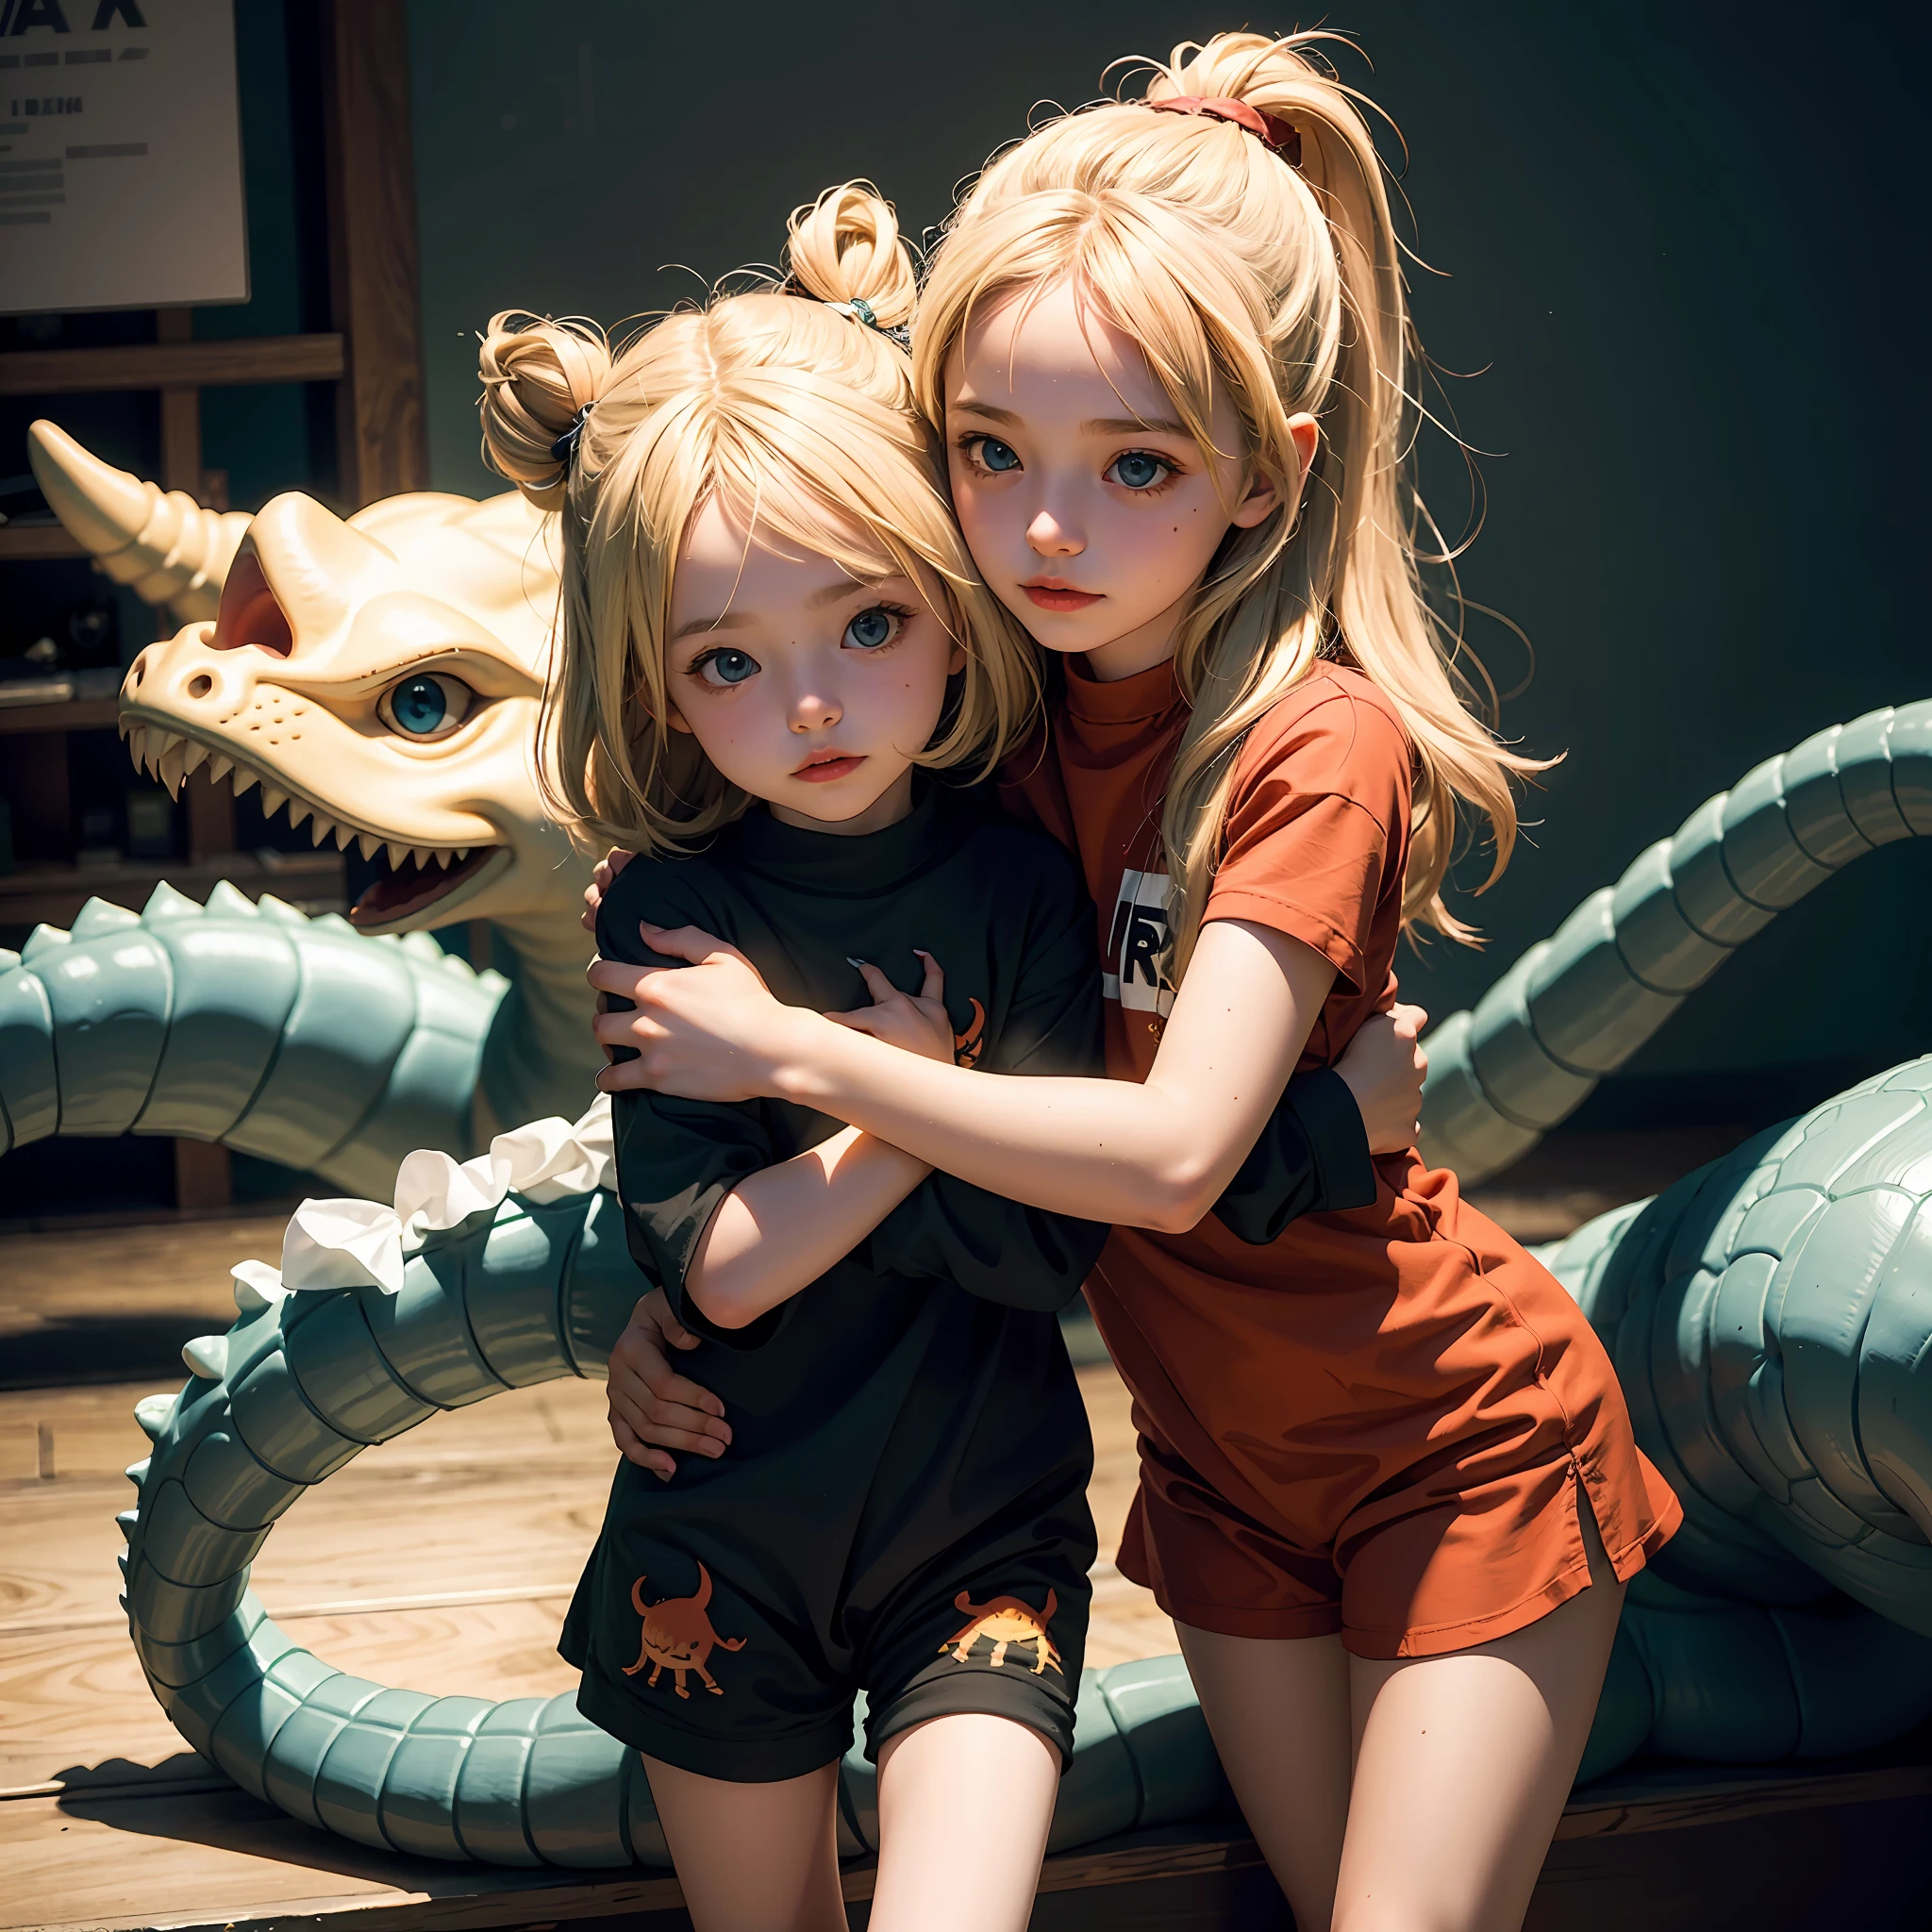 兩個小女孩互相擁抱, 金发碧眼的欧洲小子, 穿著可愛的恐龍服裝